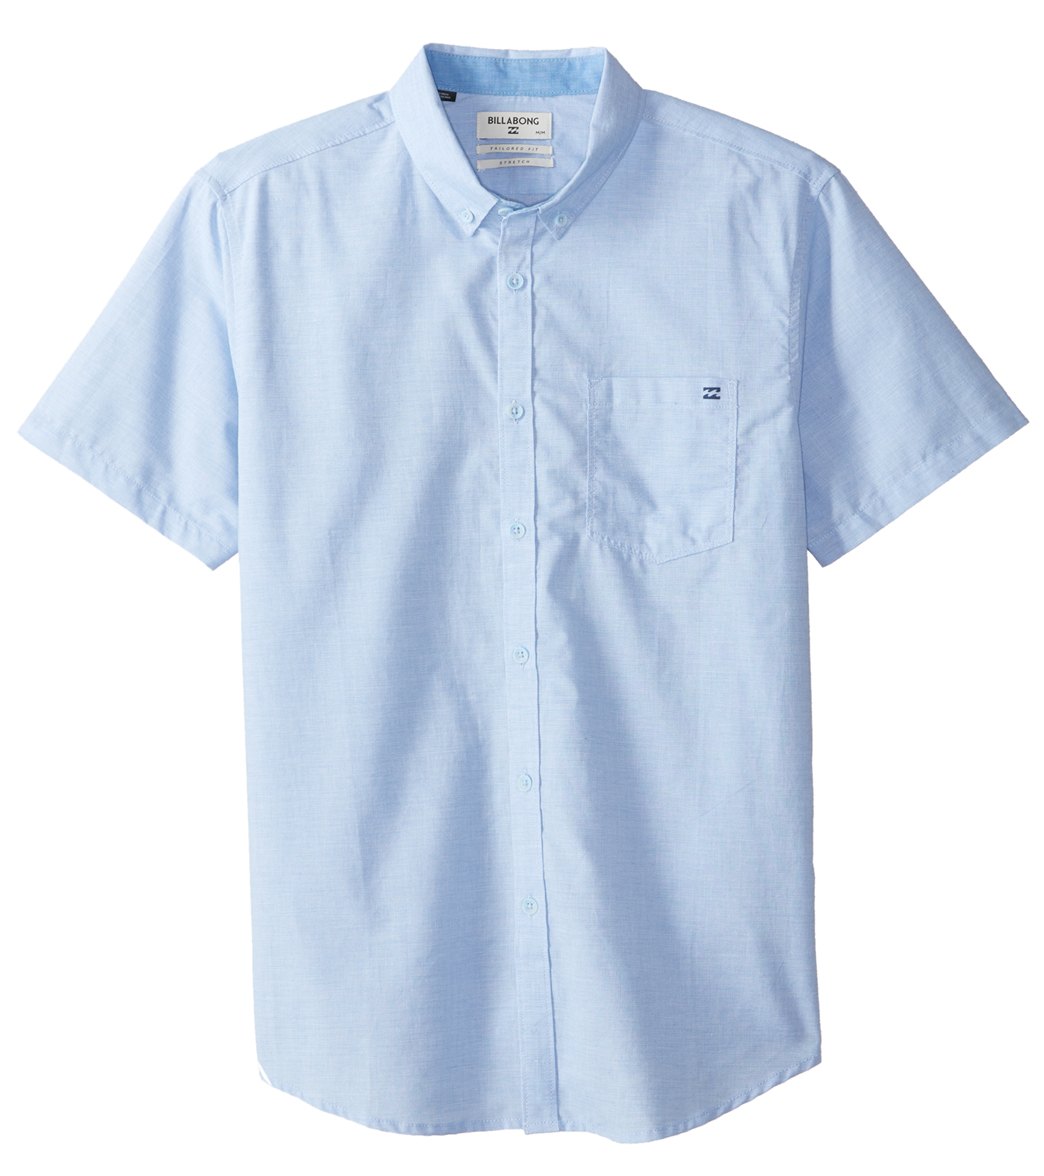 Billabong Men's All Day Chambray Short Sleeve Shirt - Light Blue Small Cotton - Swimoutlet.com